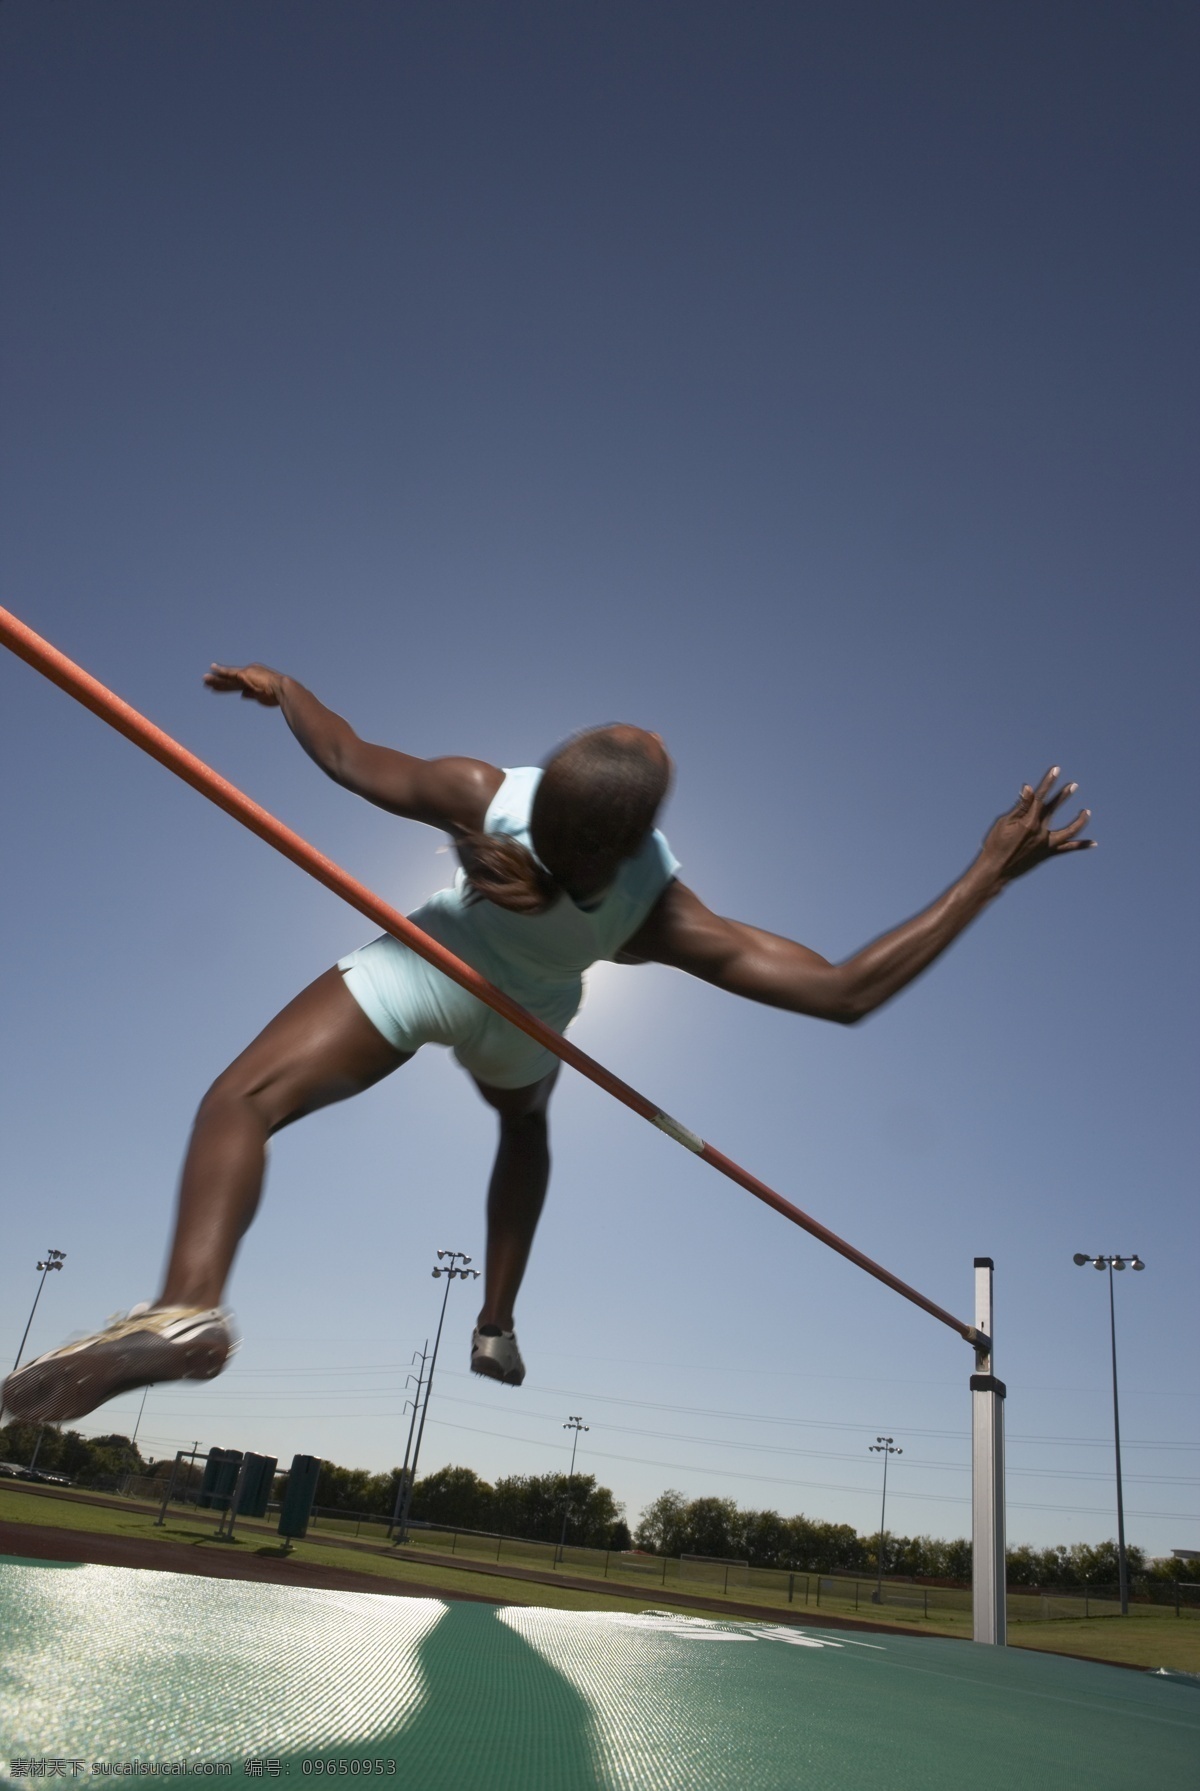 跳高 运动员 高清 体育运动 体育项目 体育比赛 外国人 黑人 男性 背跃式 跨跃 跳高运动员 摄影图 高清图片 生活百科 蓝色